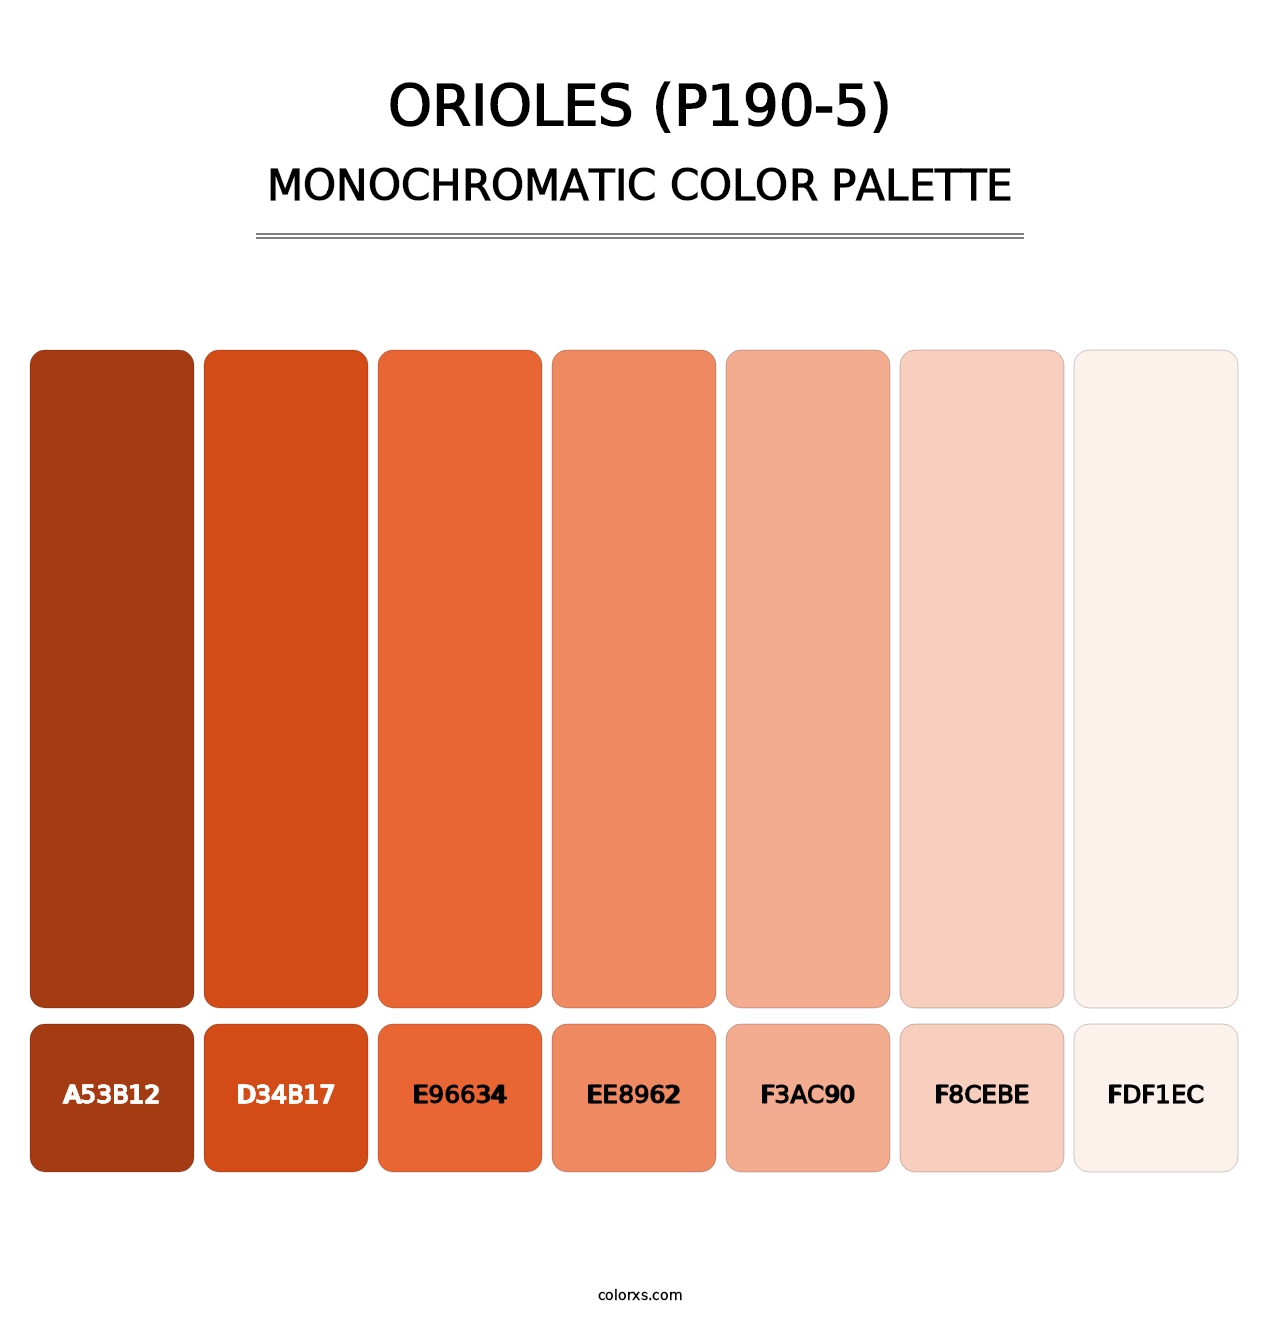 Orioles (P190-5) - Monochromatic Color Palette